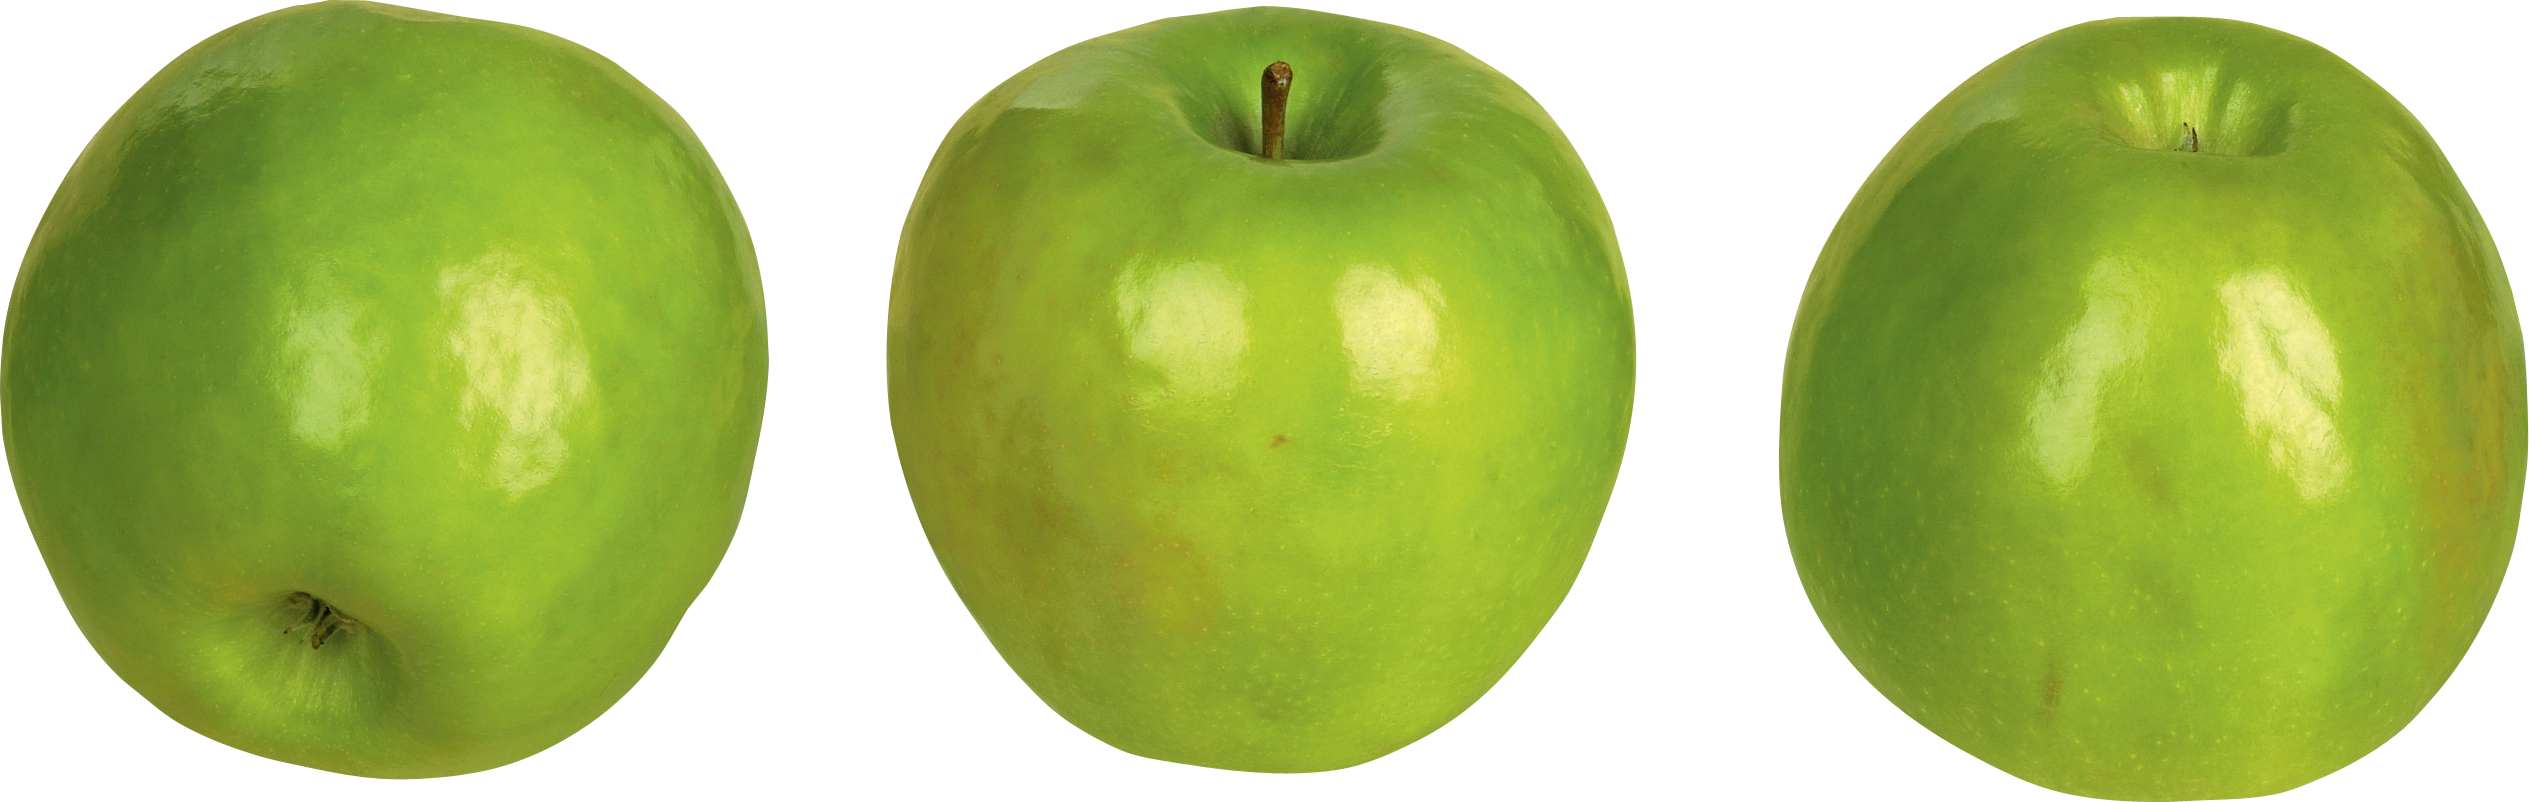 Ba quả táo xanh